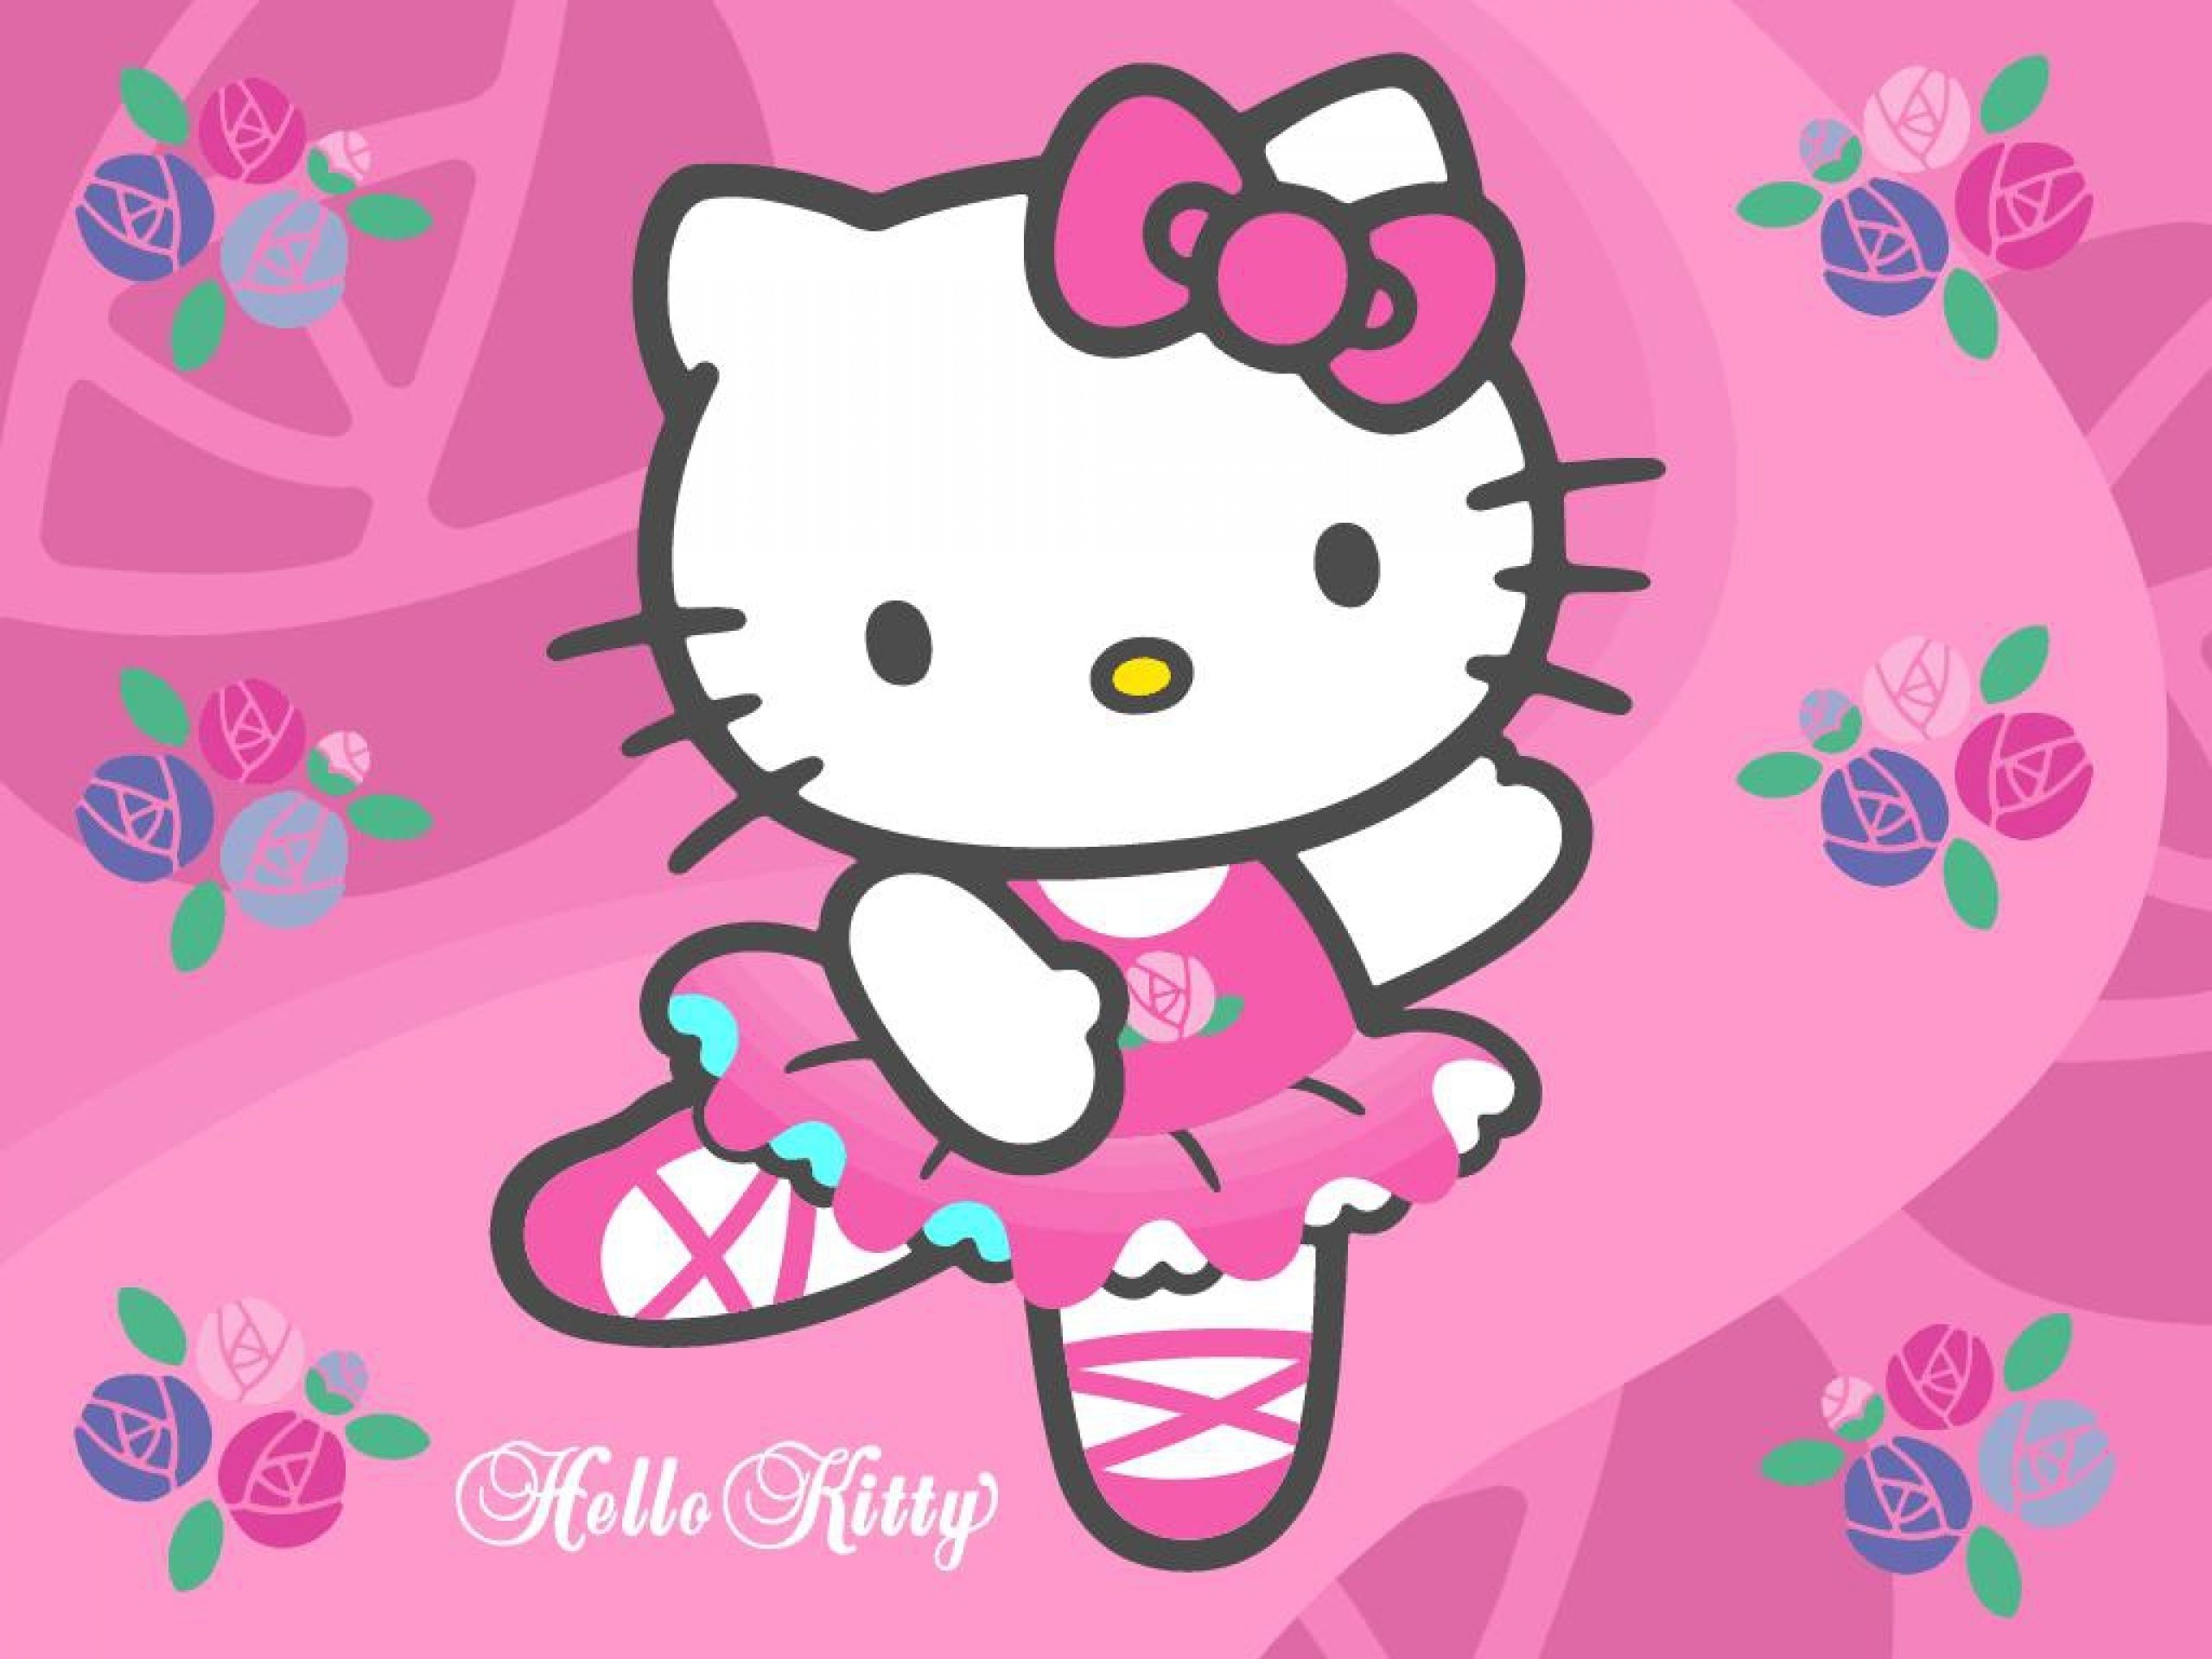 Hello Kitty Pink Wallpaper: Hãy để cho những hình nền Hello Kitty màu hồng làm cho ngày của bạn trở nên tươi sáng và vui tươi hơn. Chú mèo xinh xắn đáng yêu sẽ làm cho điện thoại hoặc máy tính của bạn trở thành một thế giới đầy tình yêu và trẻ trung. Hãy đến với những hình nền Hello Kitty màu hồng này và cùng tận hưởng nhé!